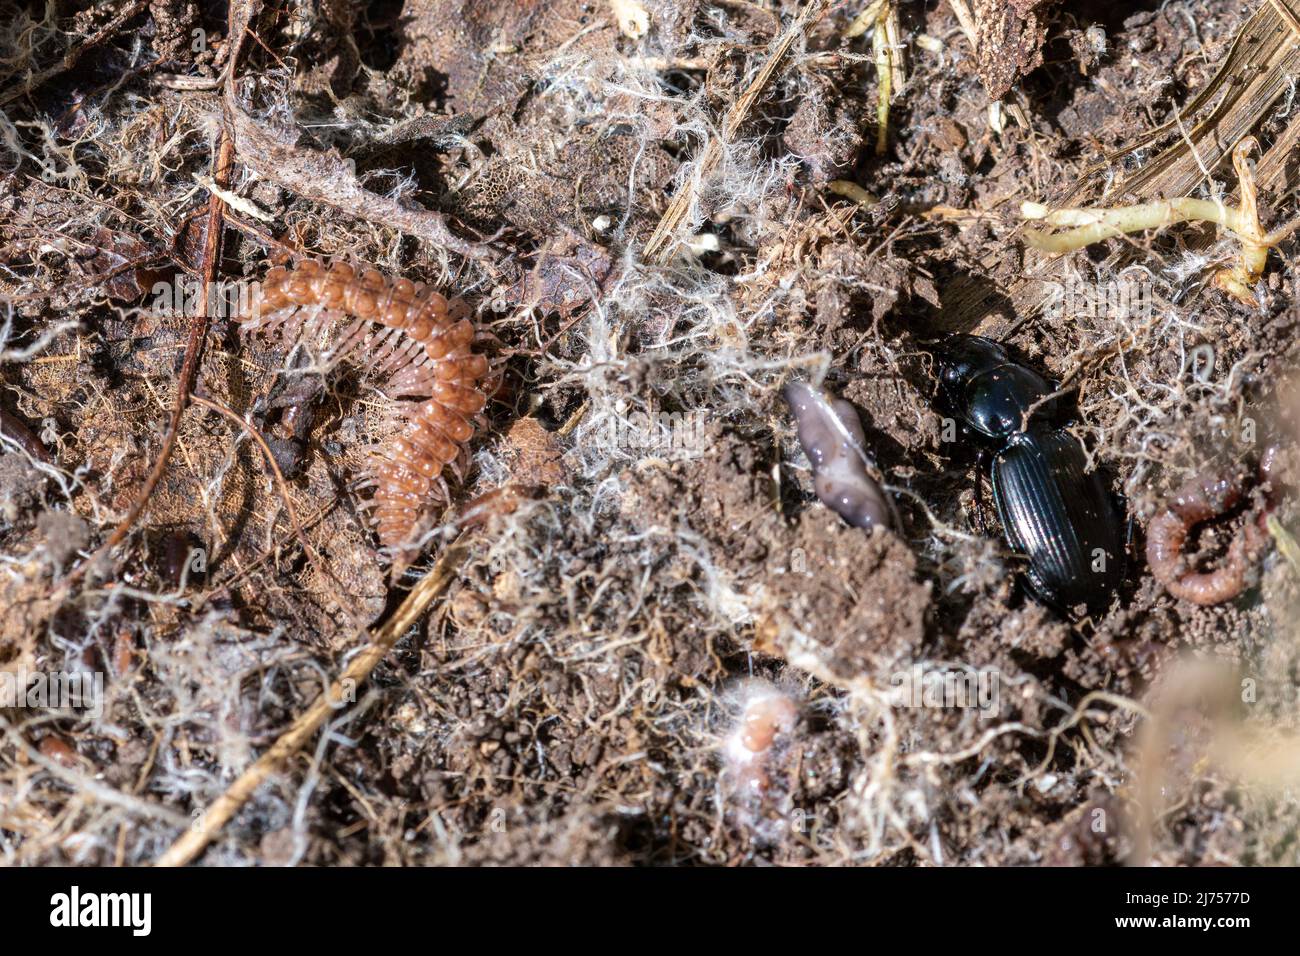 Un millipede à dos plat (Polydesmus angustus) et un scarabée terrestre, un invertébrés de créature miniature trouvé sous une chasse aux insectes en rondins, Angleterre, Royaume-Uni Banque D'Images